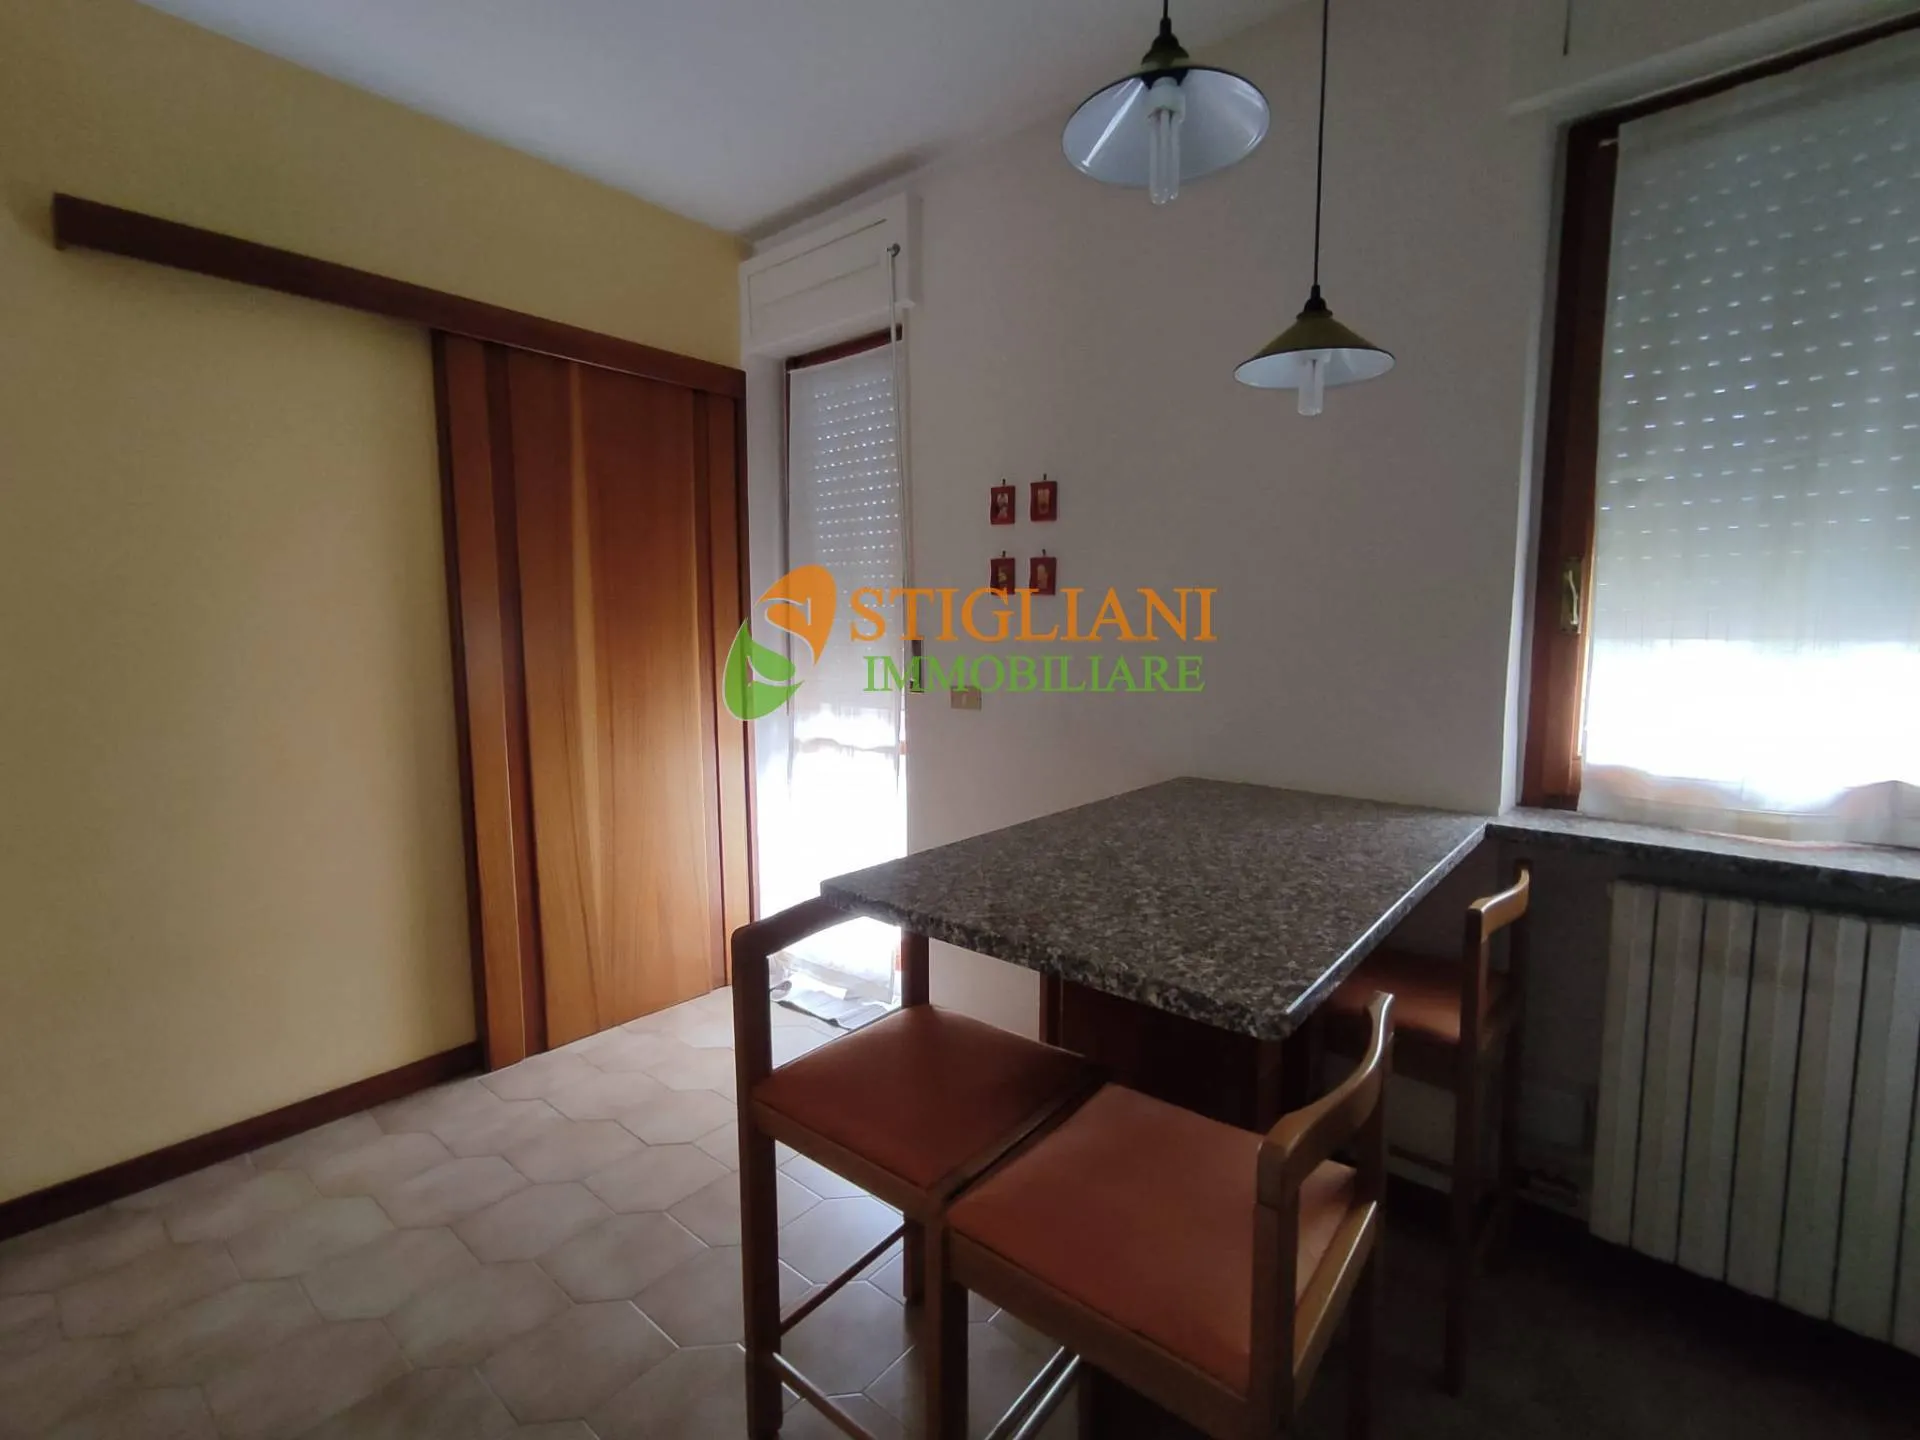 Immagine per Appartamento in vendita a Campobasso Via San Giovanni